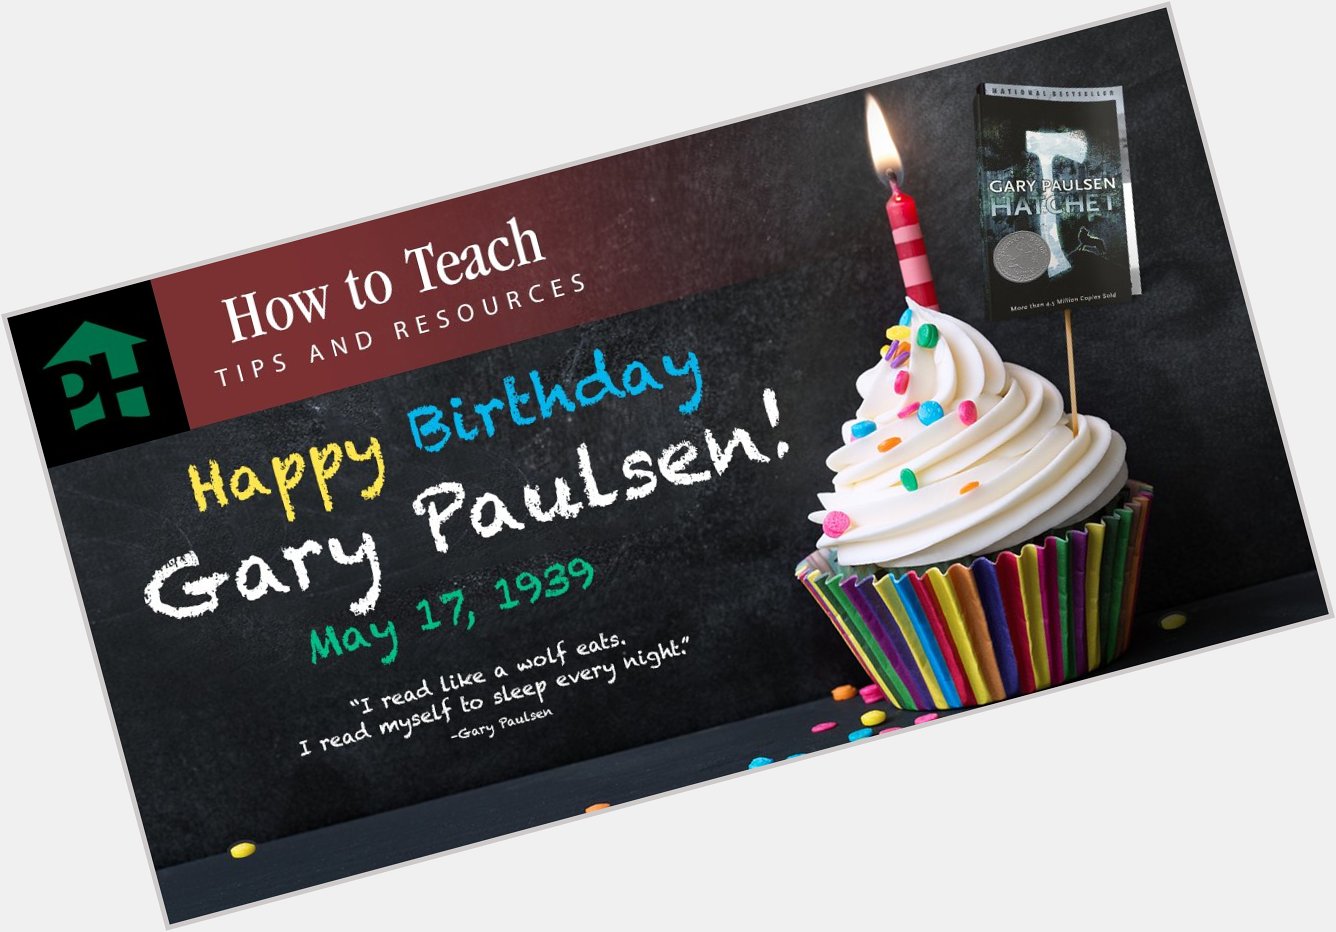 Happy birthday to Gary Paulsen!  